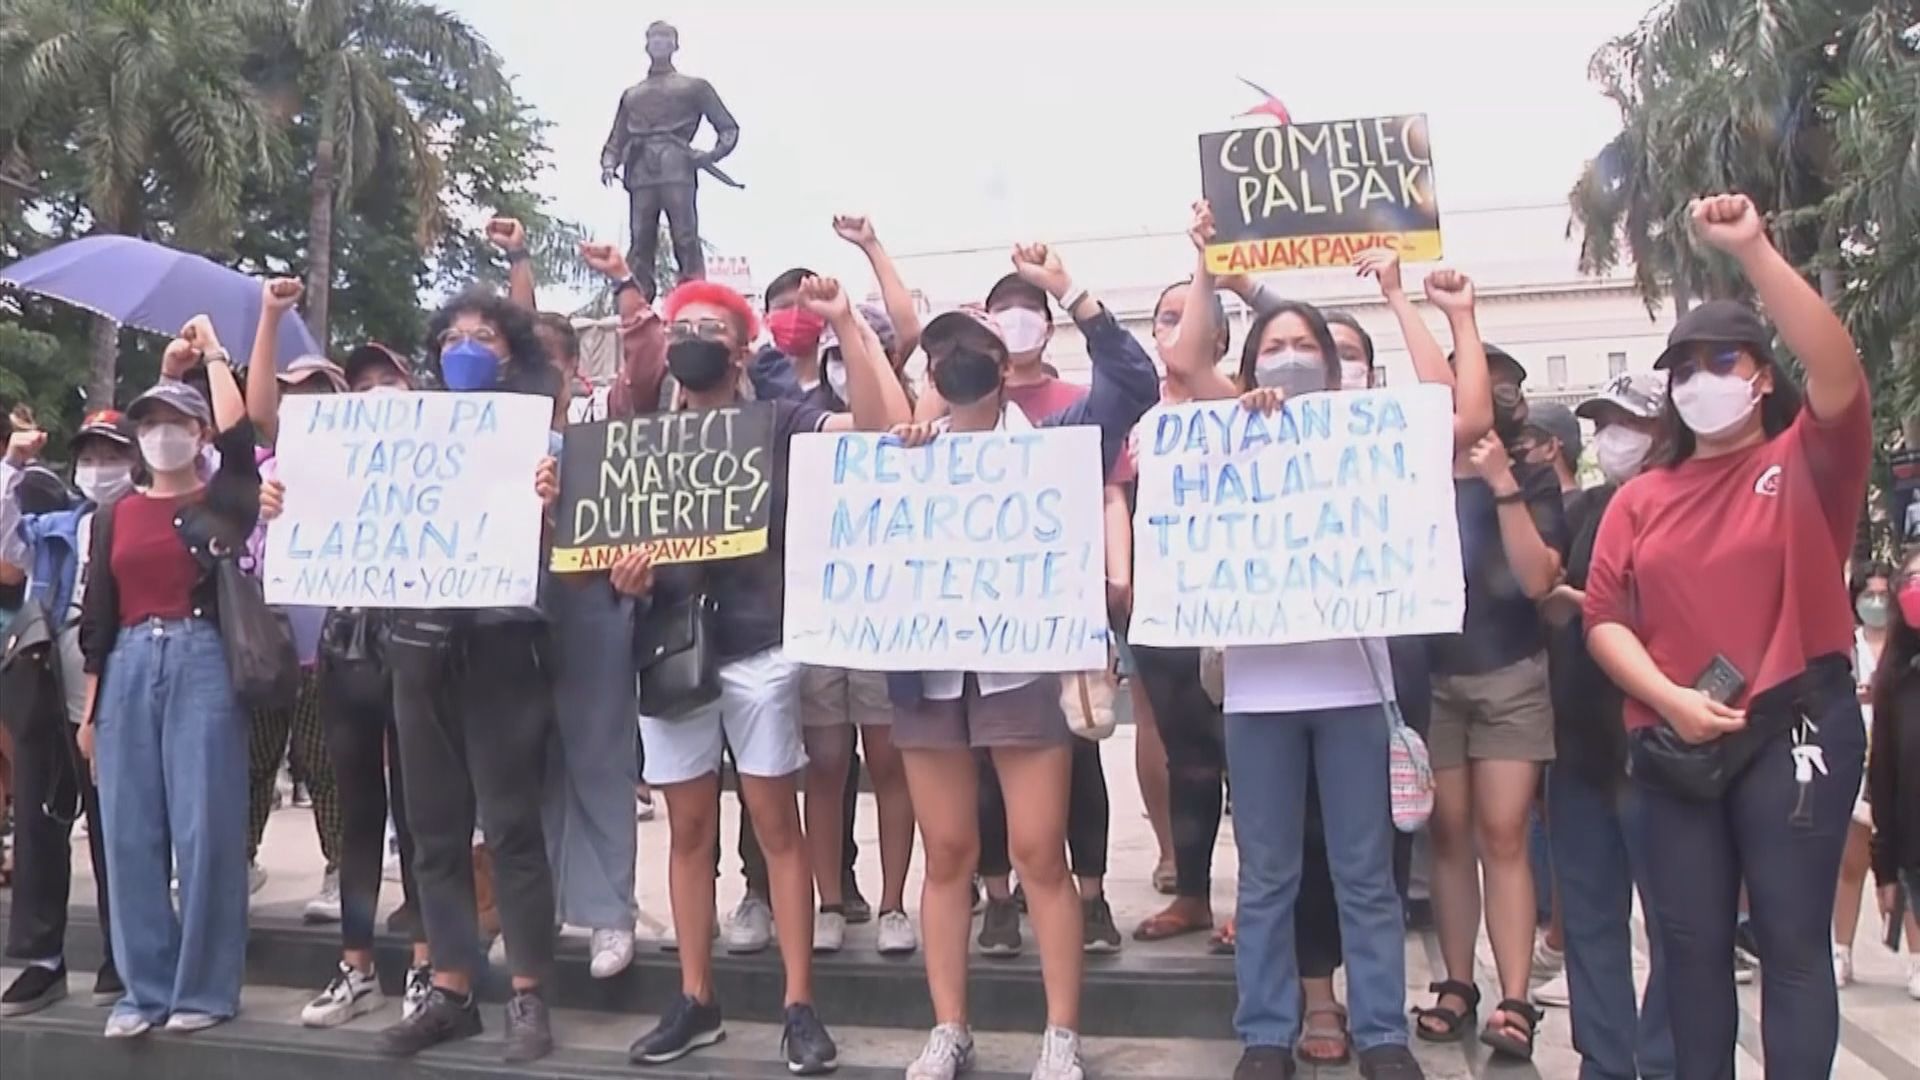 反對者上街示威抗議小馬可斯勝出菲律賓總統大選